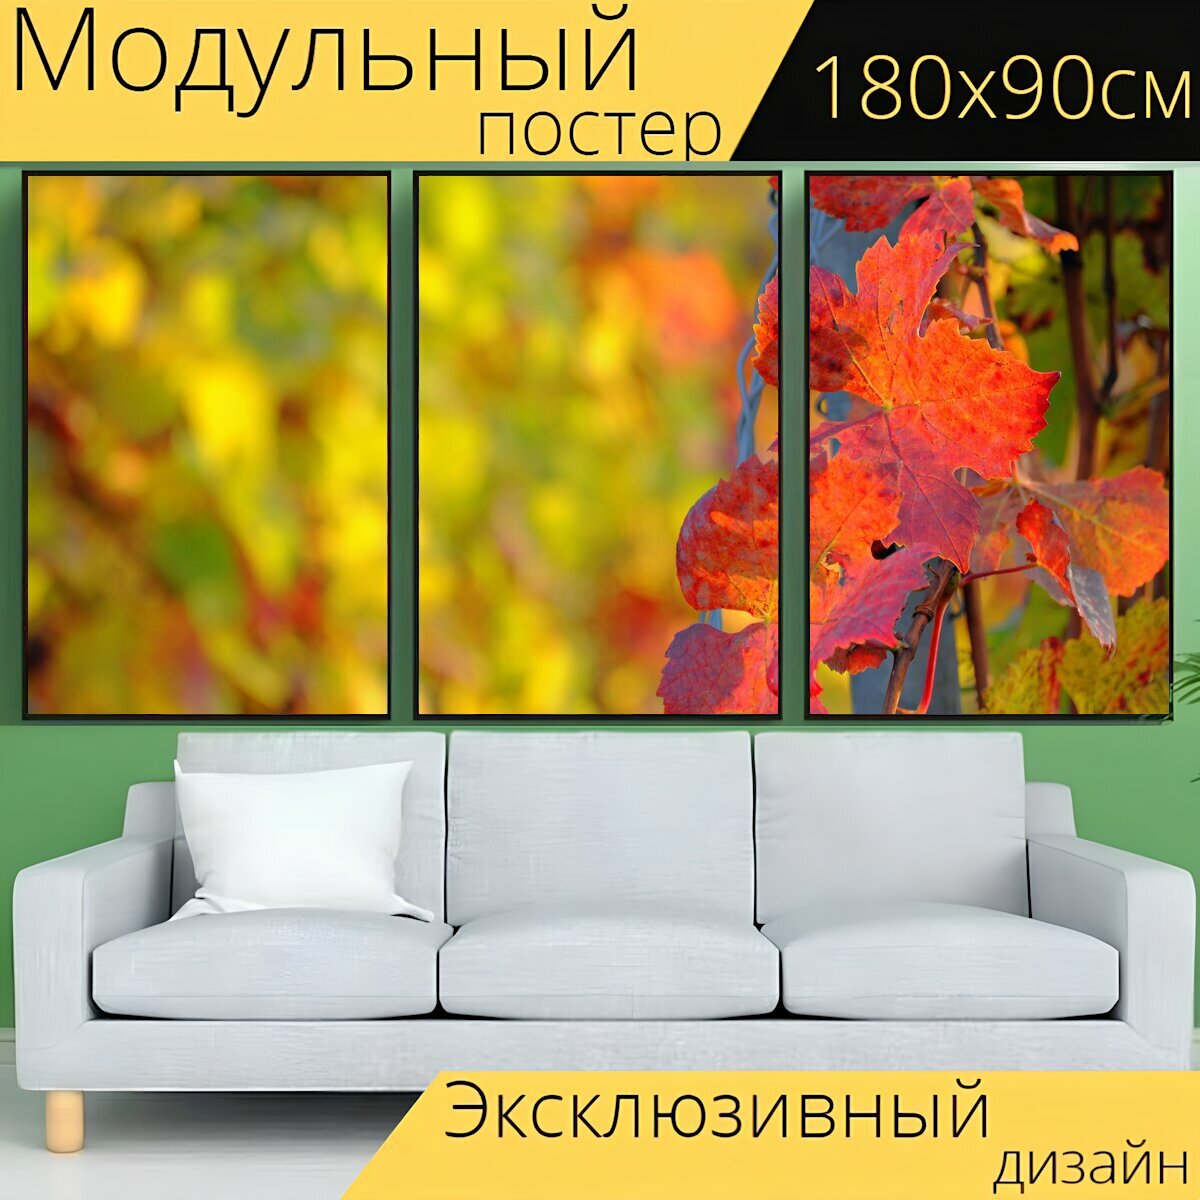 Модульный постер "Осень, листья, листва" 180 x 90 см. для интерьера